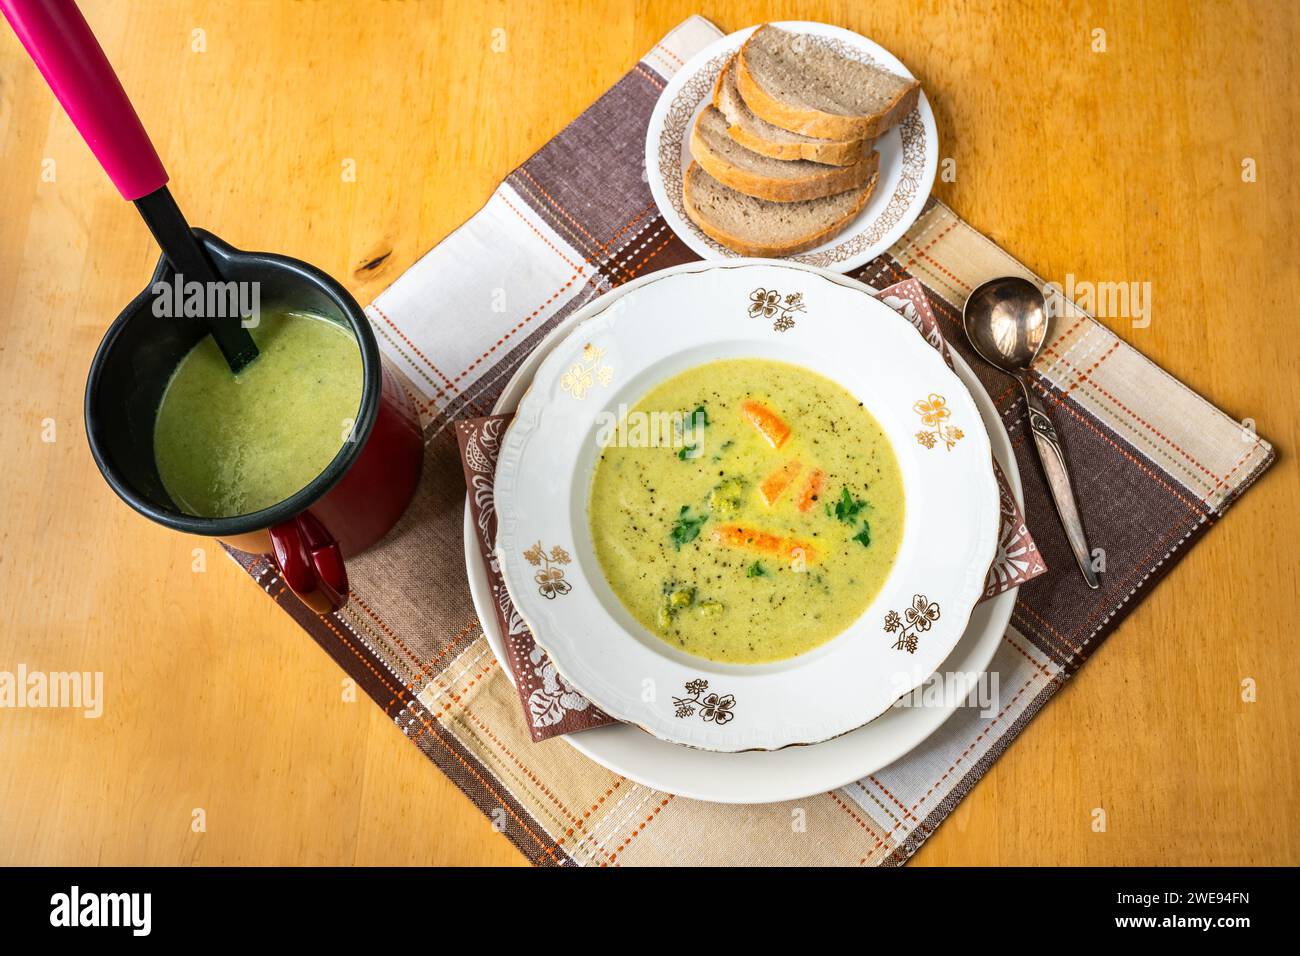 Soupe de brocoli crémeuse dans l'assiette et la casserole, louche, pain tranché sur l'assiette sur la nappe sur la table en bois. Banque D'Images